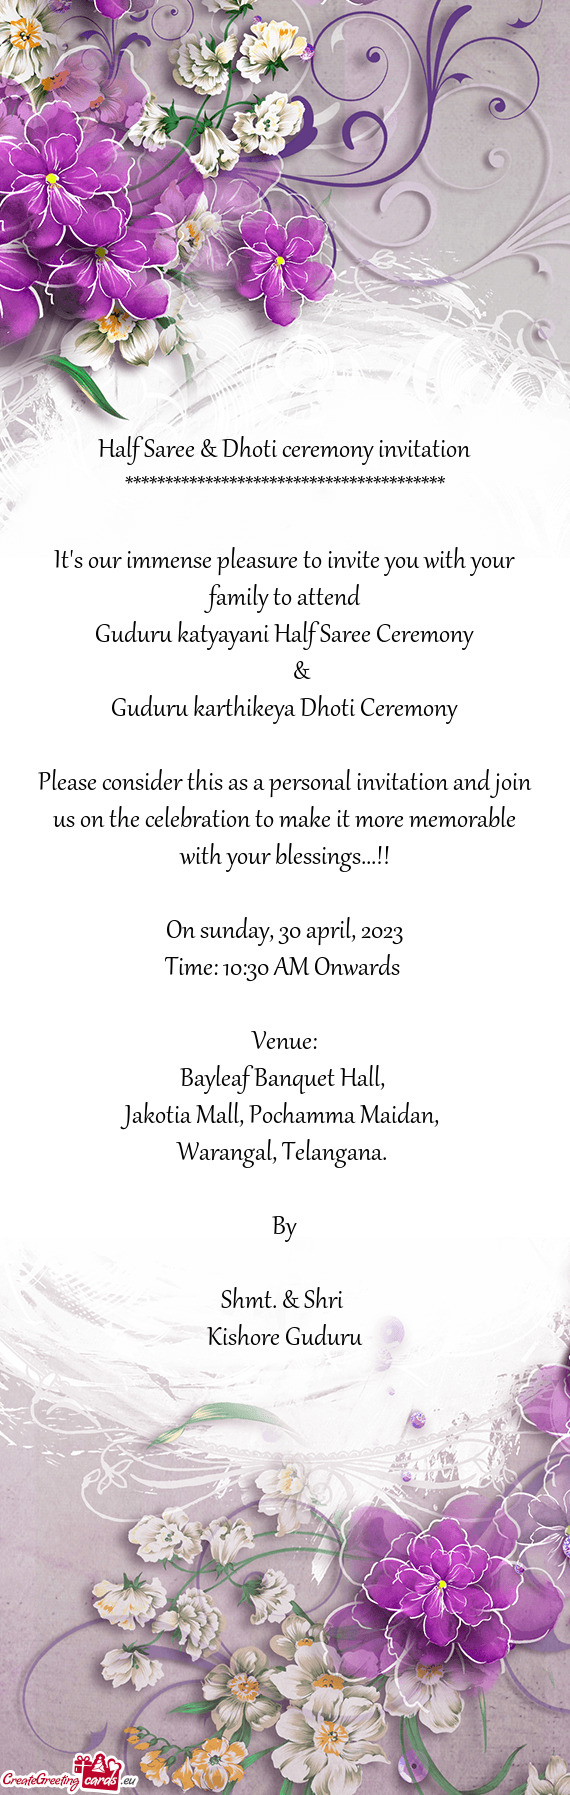 Guduru katyayani Half Saree Ceremony